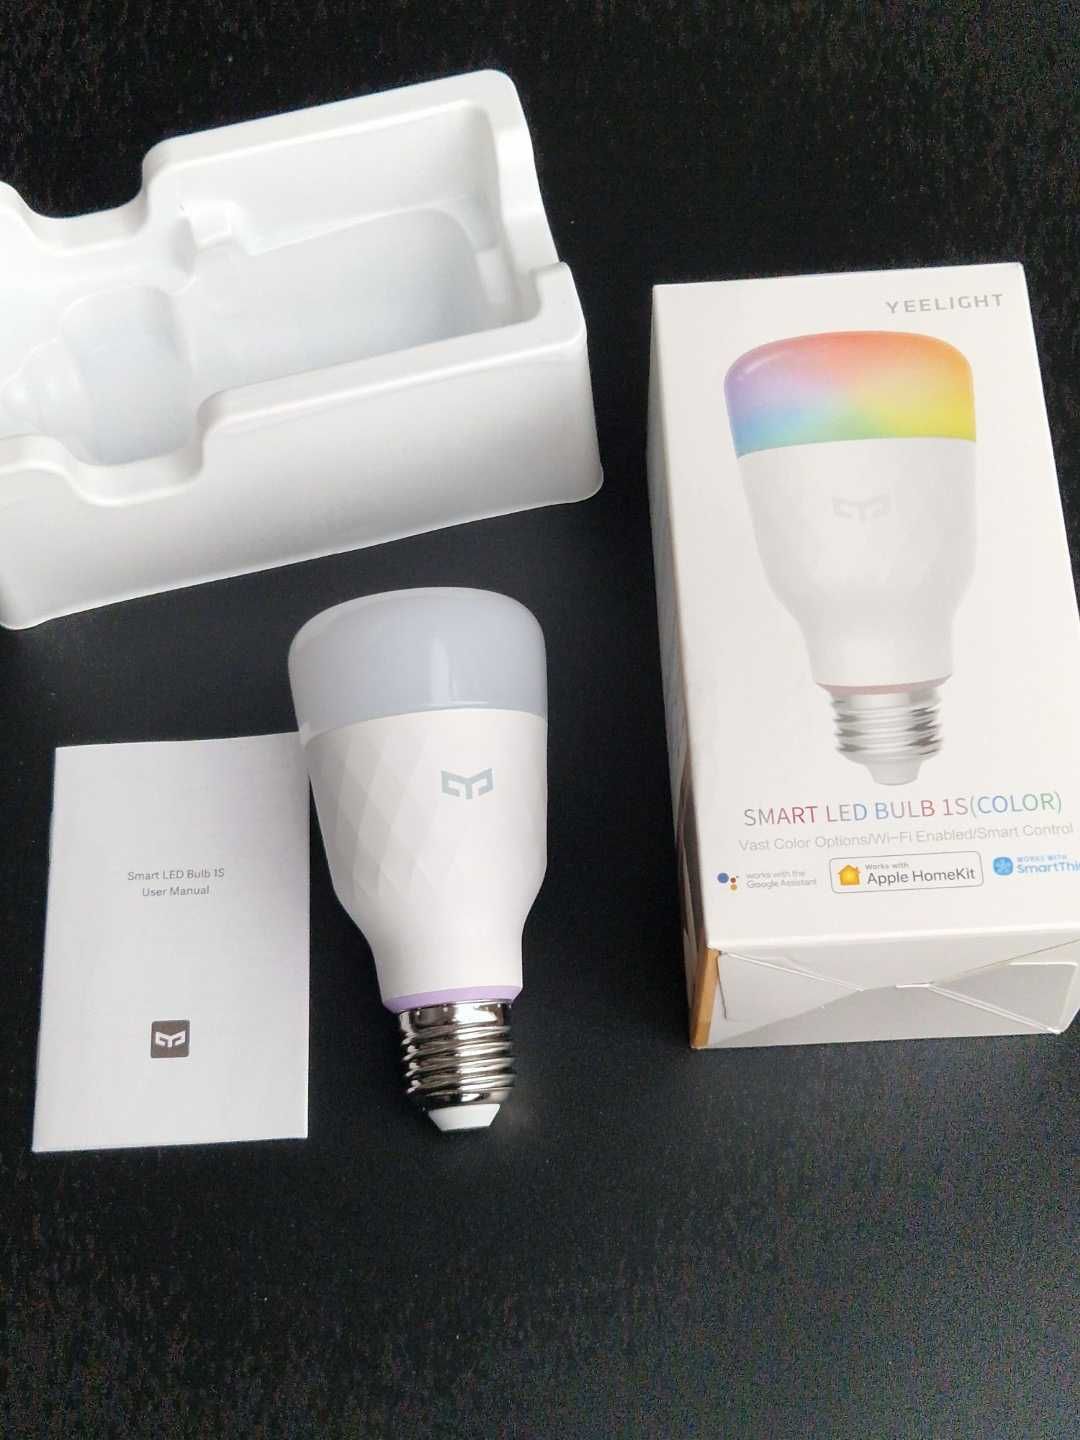 Żarówka RGB Smart LED Bulb 1S, nowa, nie używana